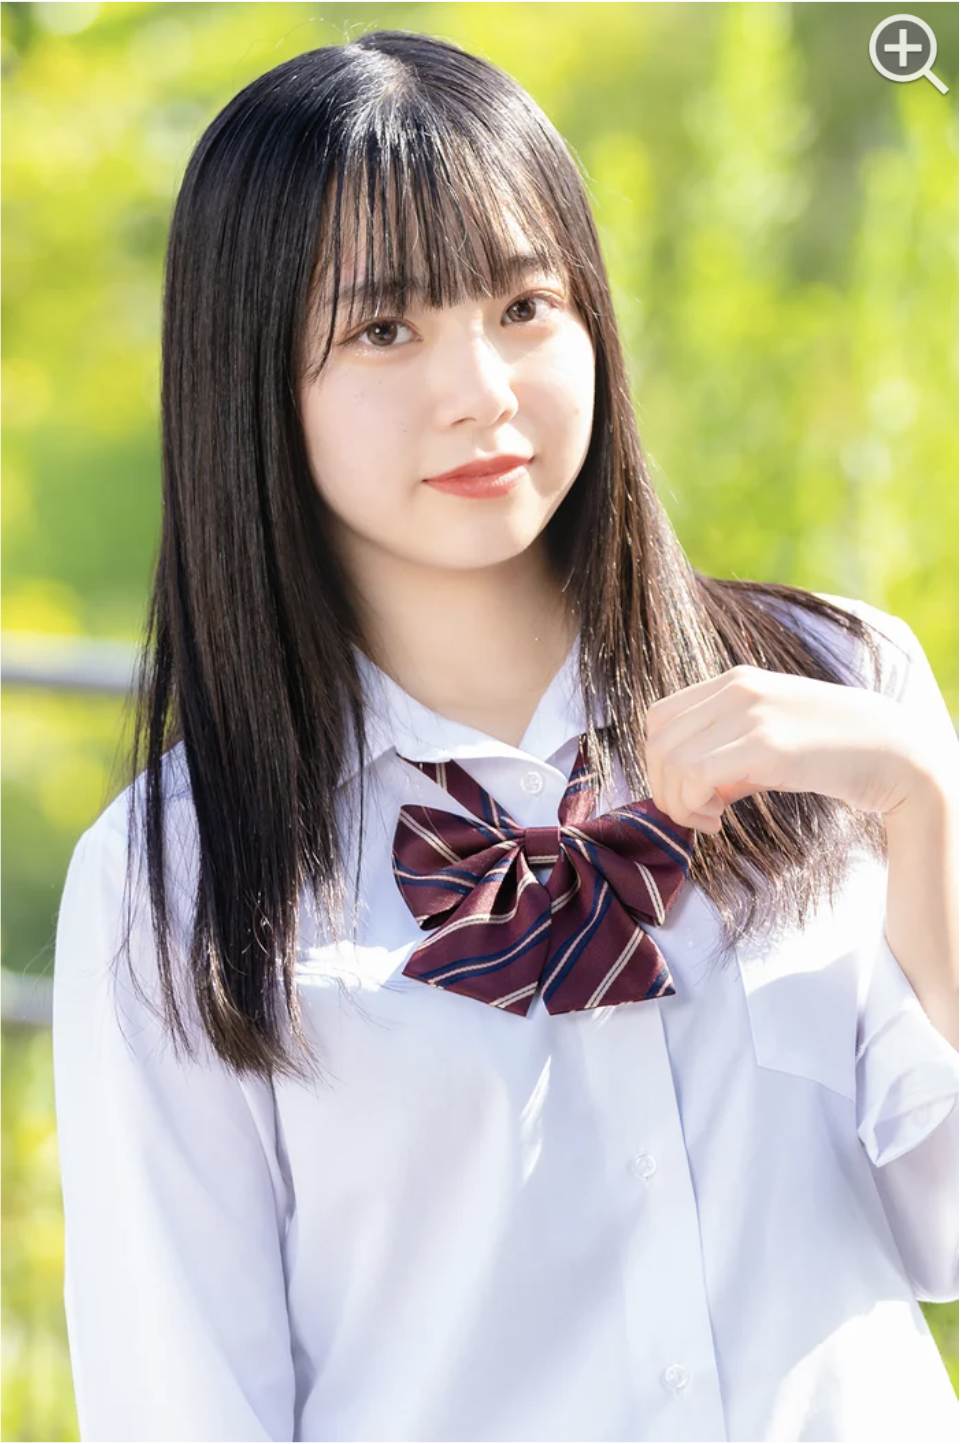 日本一かわいい女子高生 を決定するコンテスト 女子高生ミスコン ファイナリスト暫定10名が決定 株式会社エイチジェイ